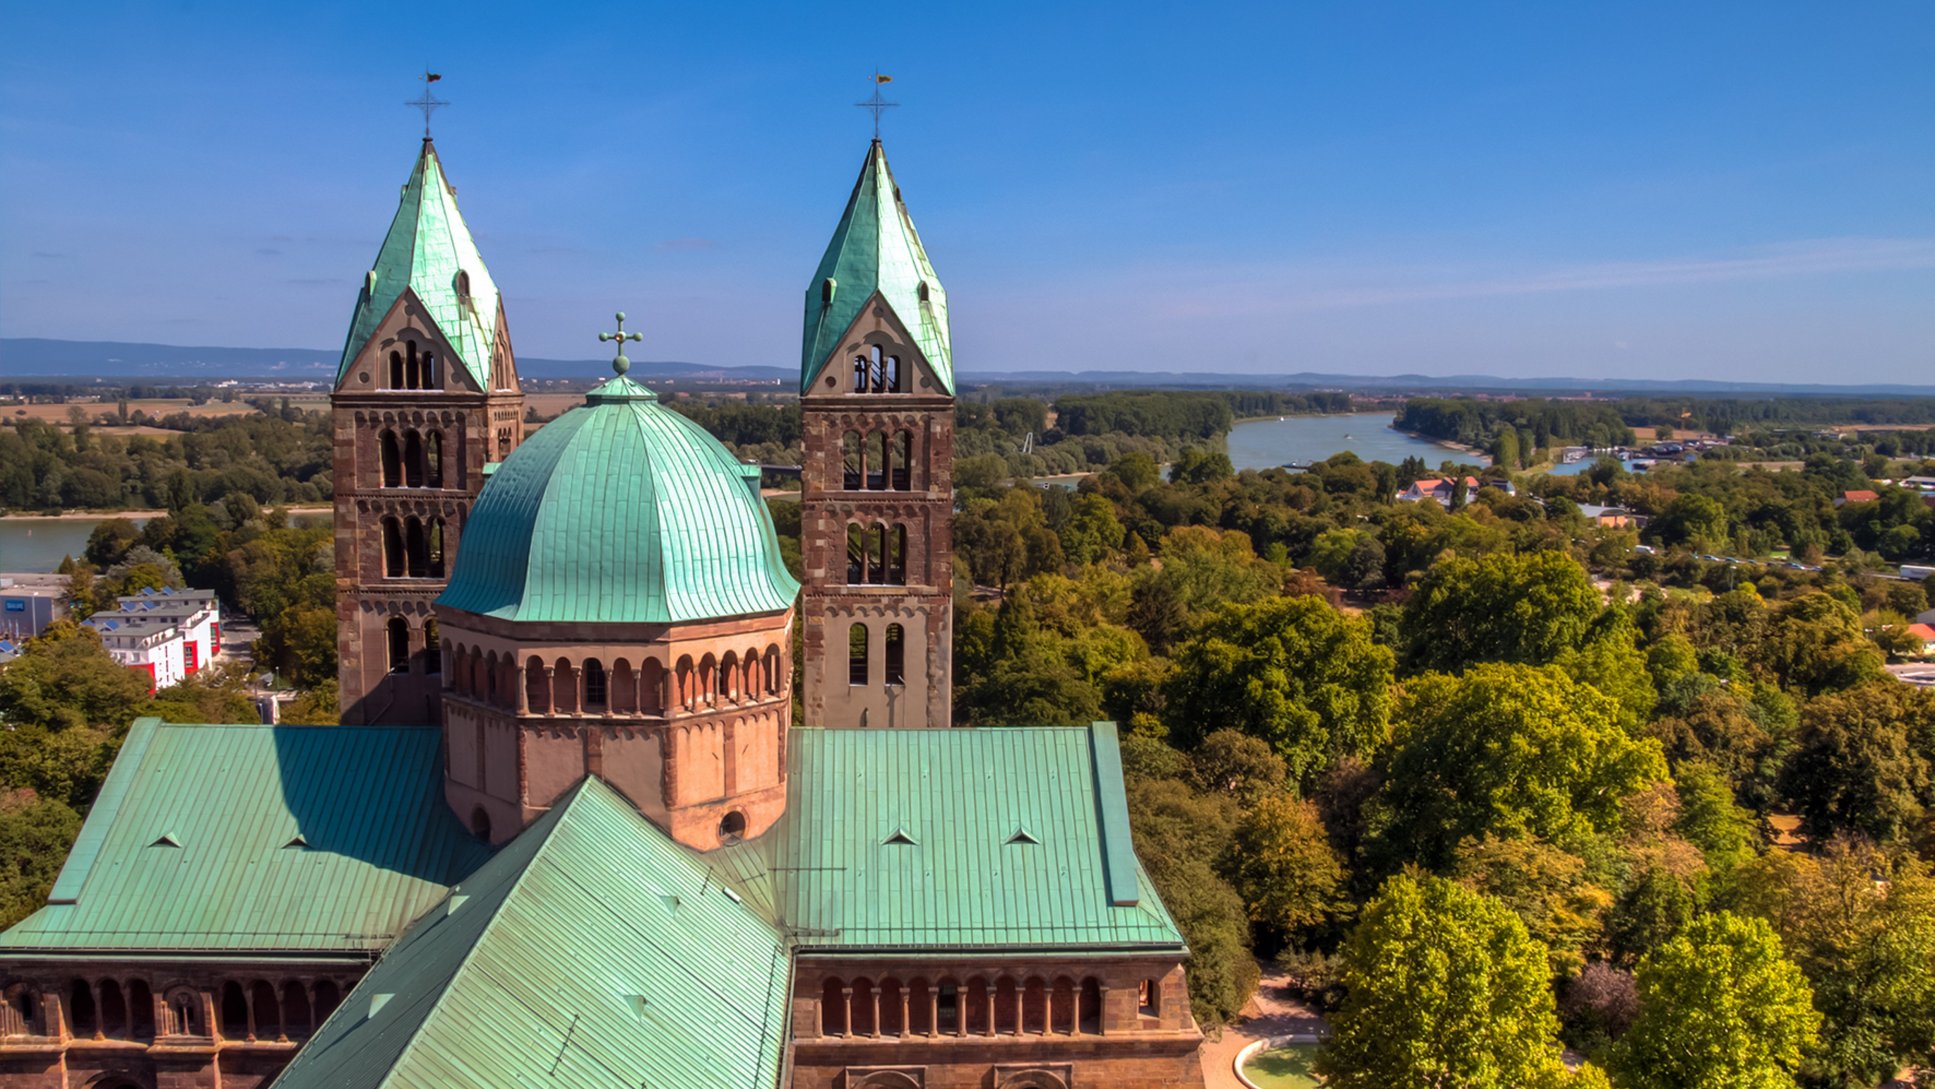 Dom zu Speyer; Blick von der Aussichtsplattform auf den Ostteil mit Querhaus und Osttürmen